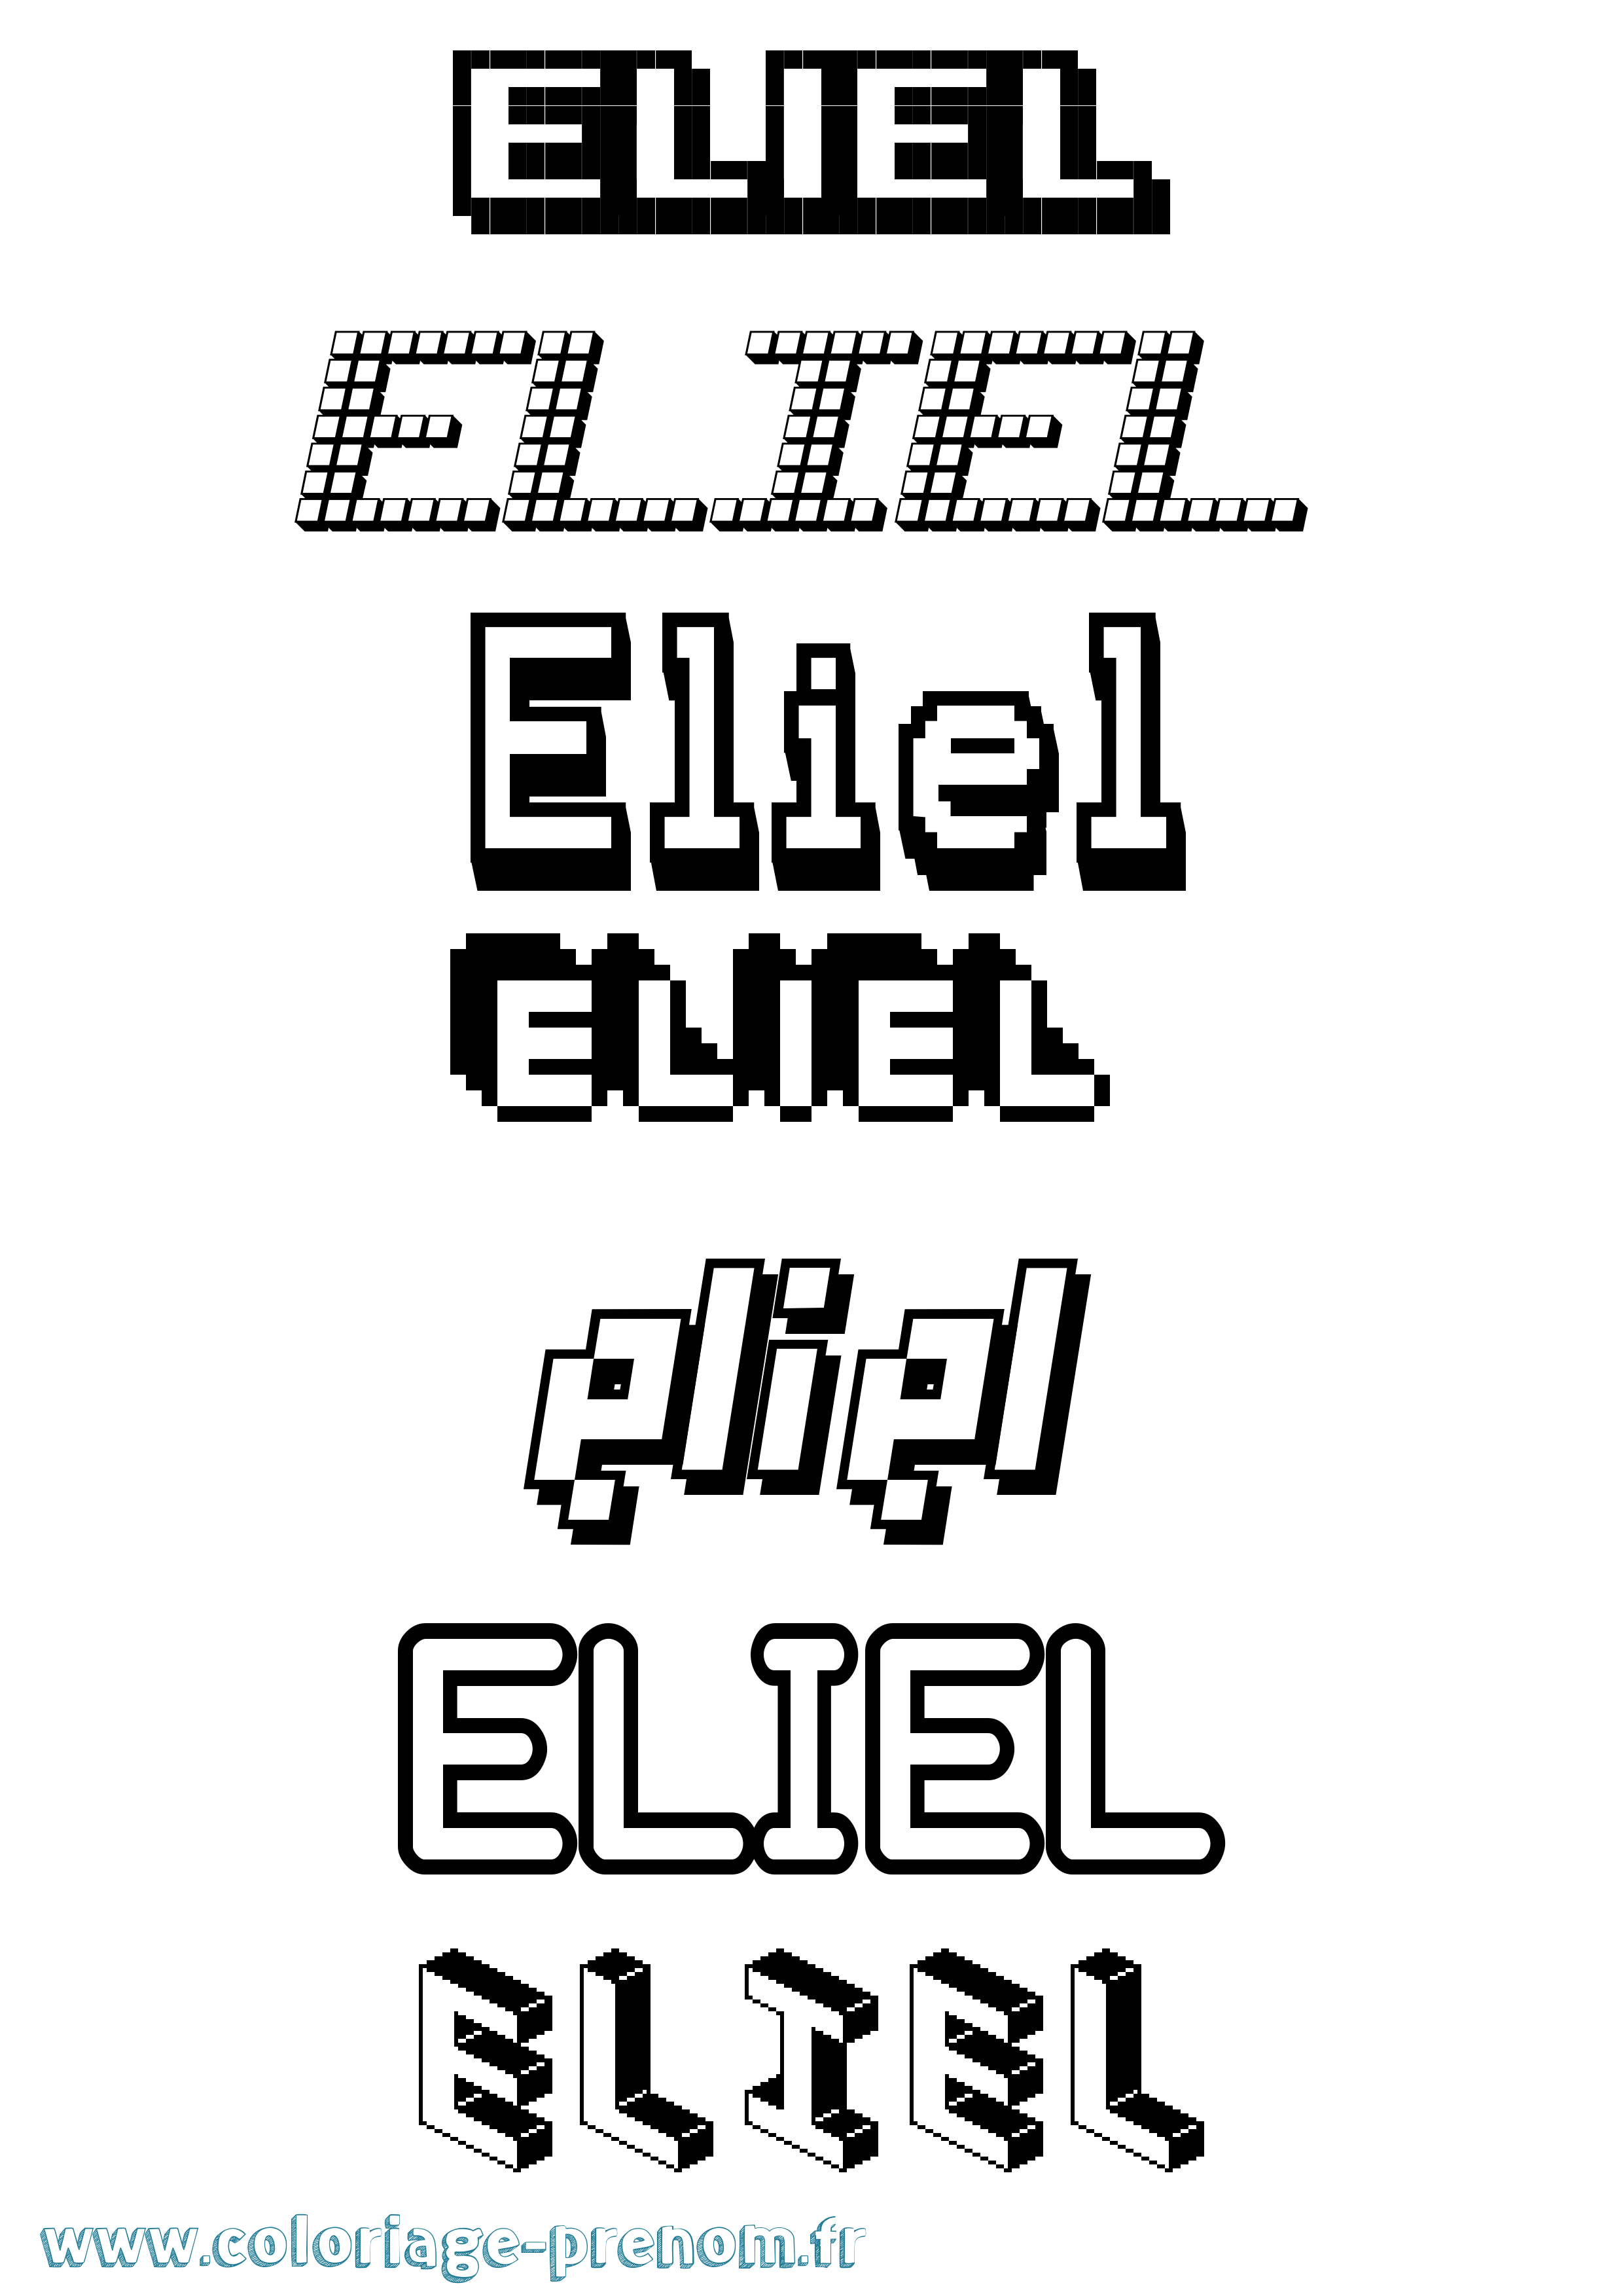 Coloriage prénom Eliel Pixel